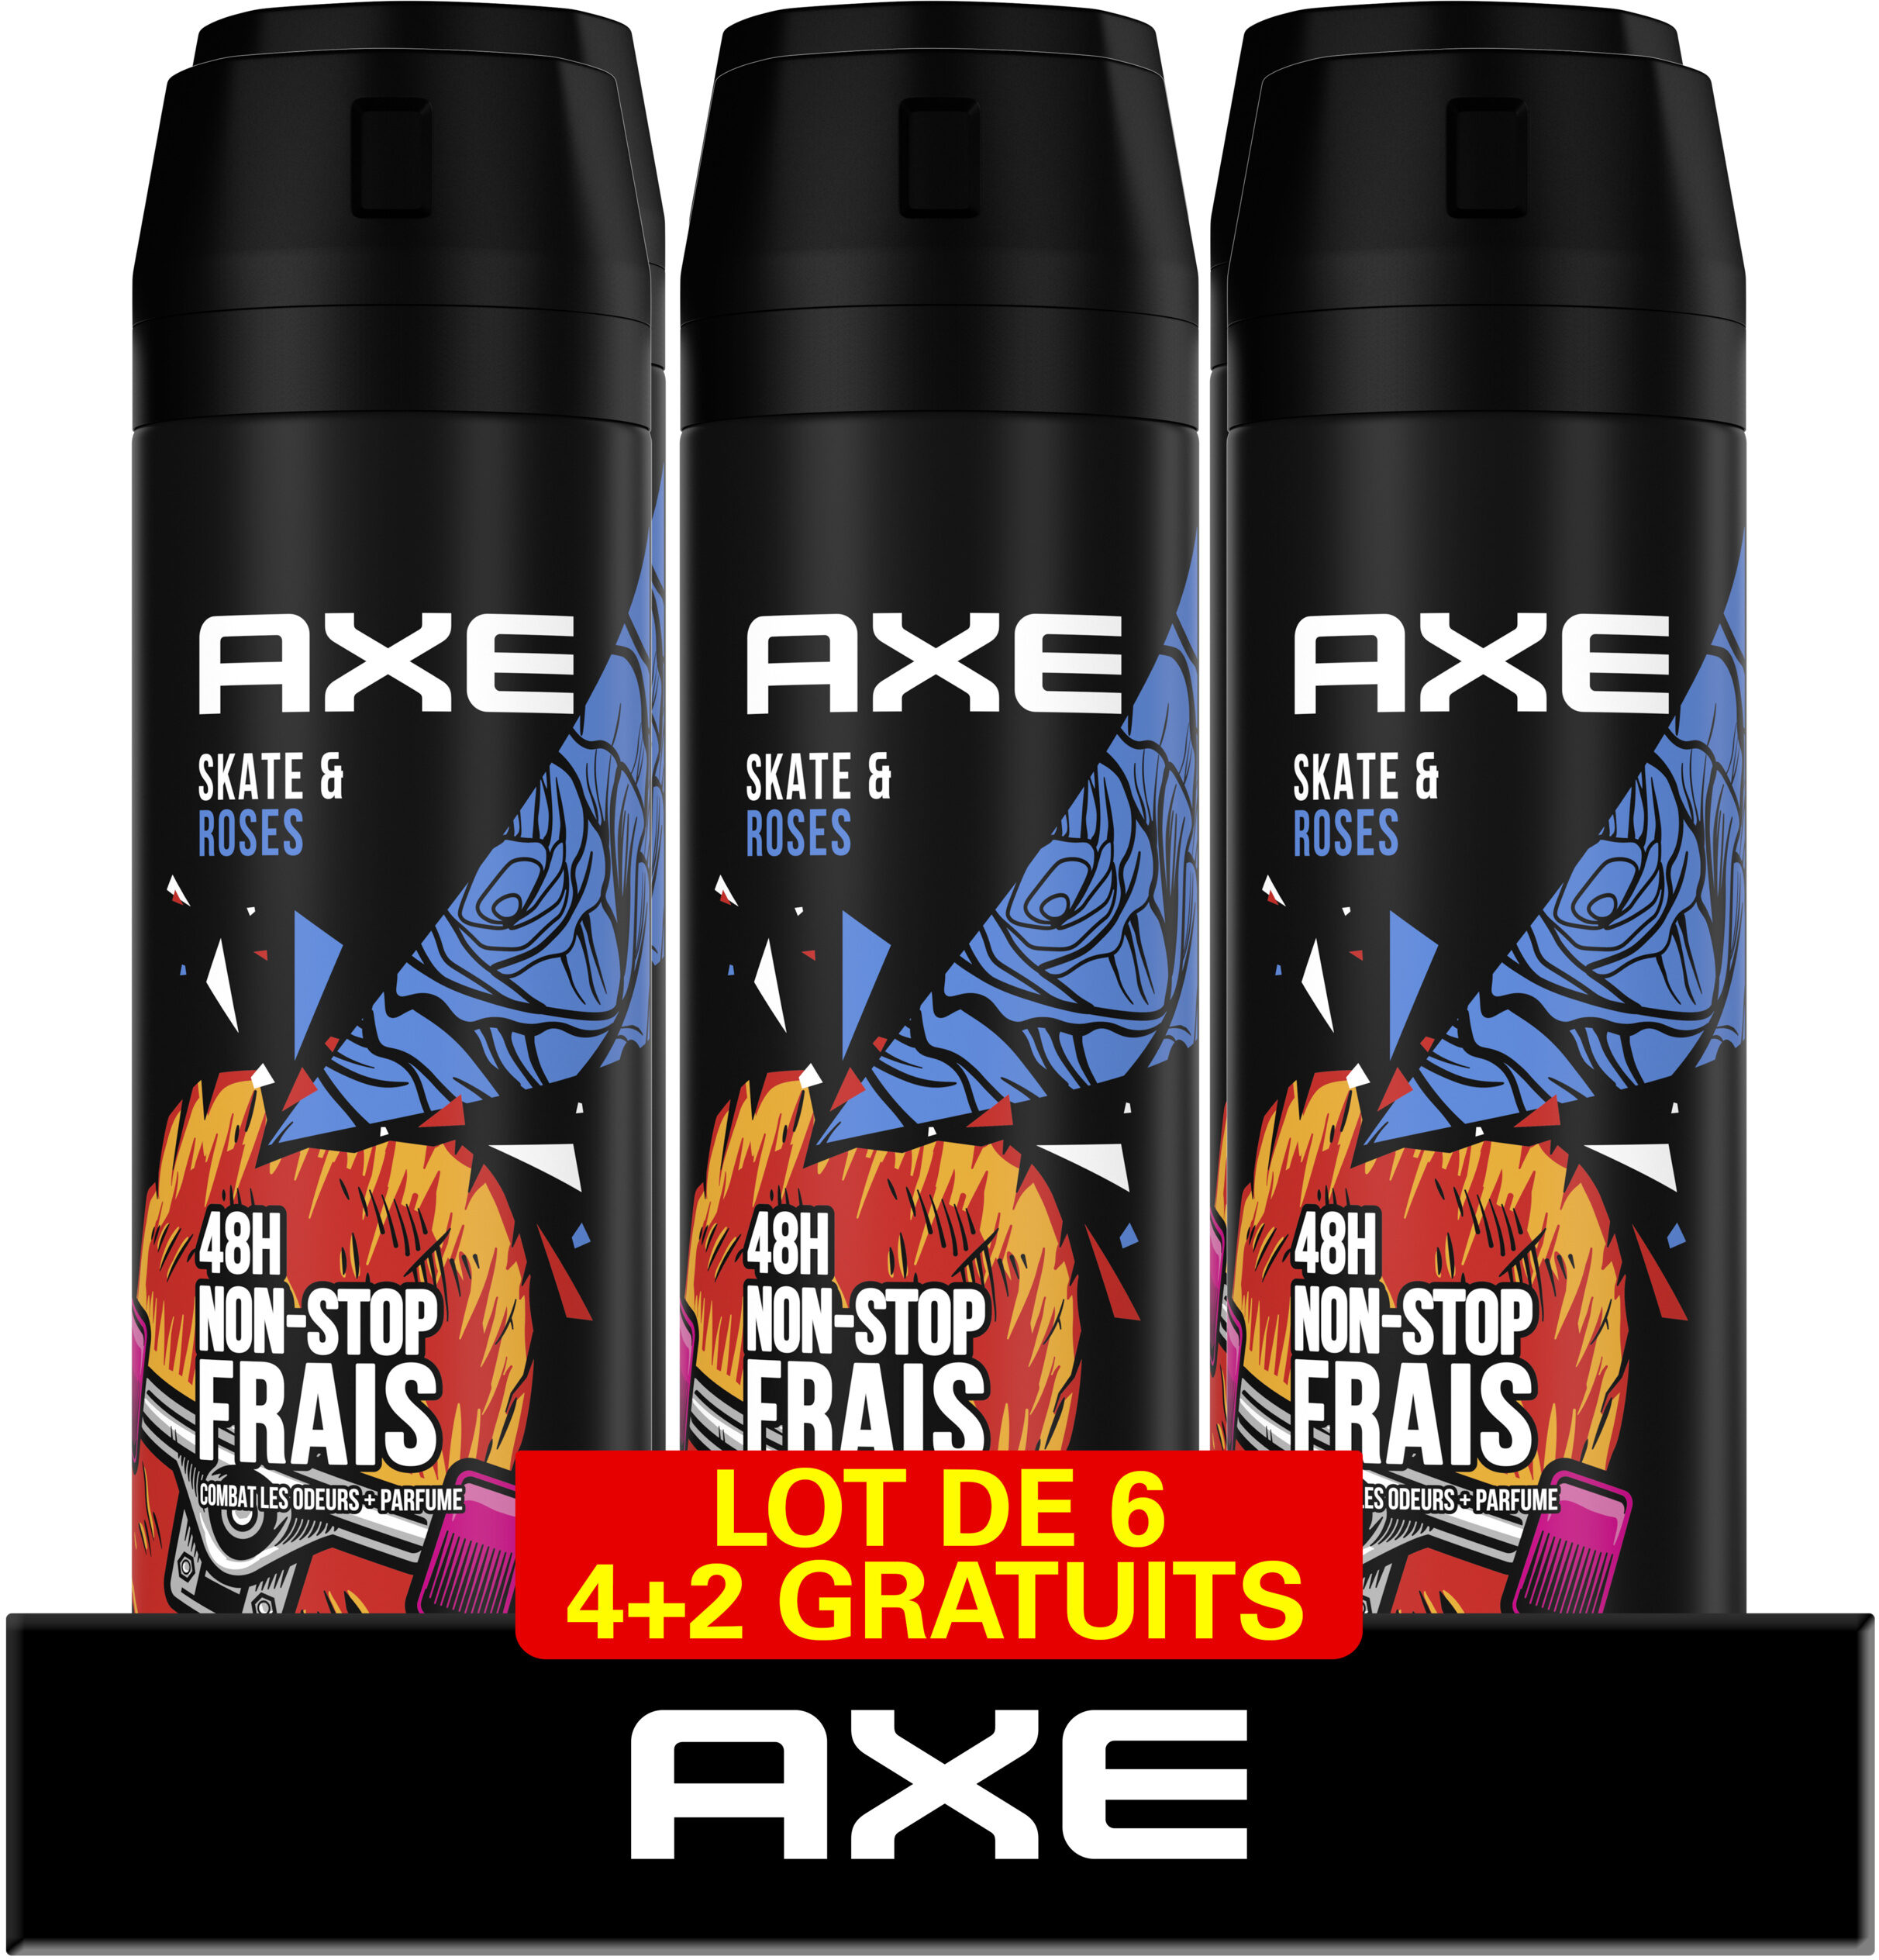 AXE Déodorant Bodyspray Homme Skate & Roses 48 Lot 6x200ml GV - Product - fr